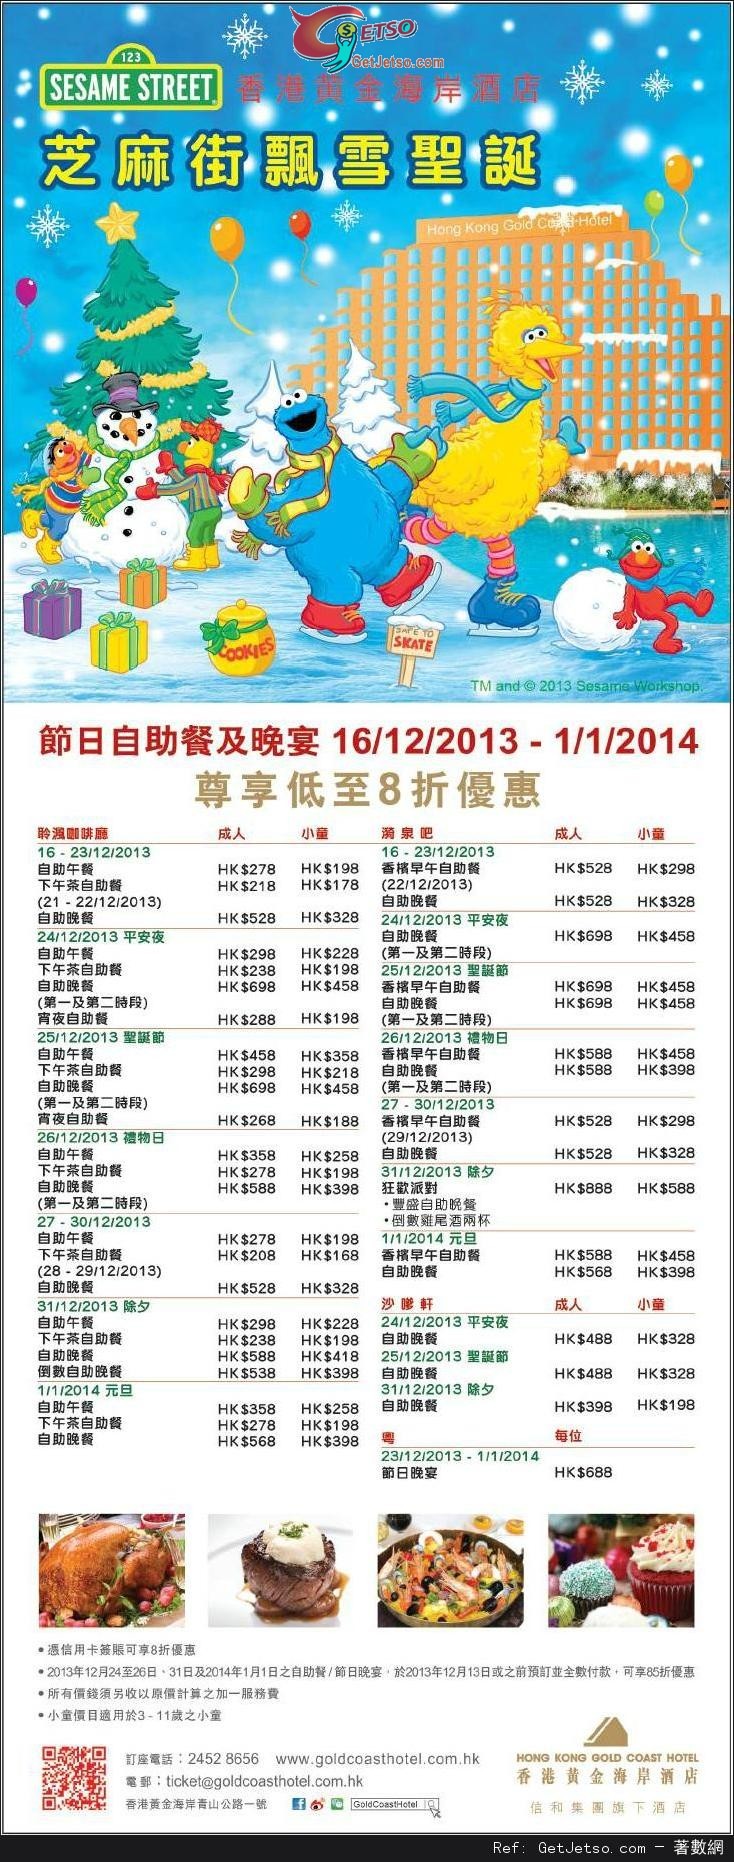 香港黃金海岸酒店2013年聖誕及除夕自助餐預訂優惠(至13年12月13日)圖片1